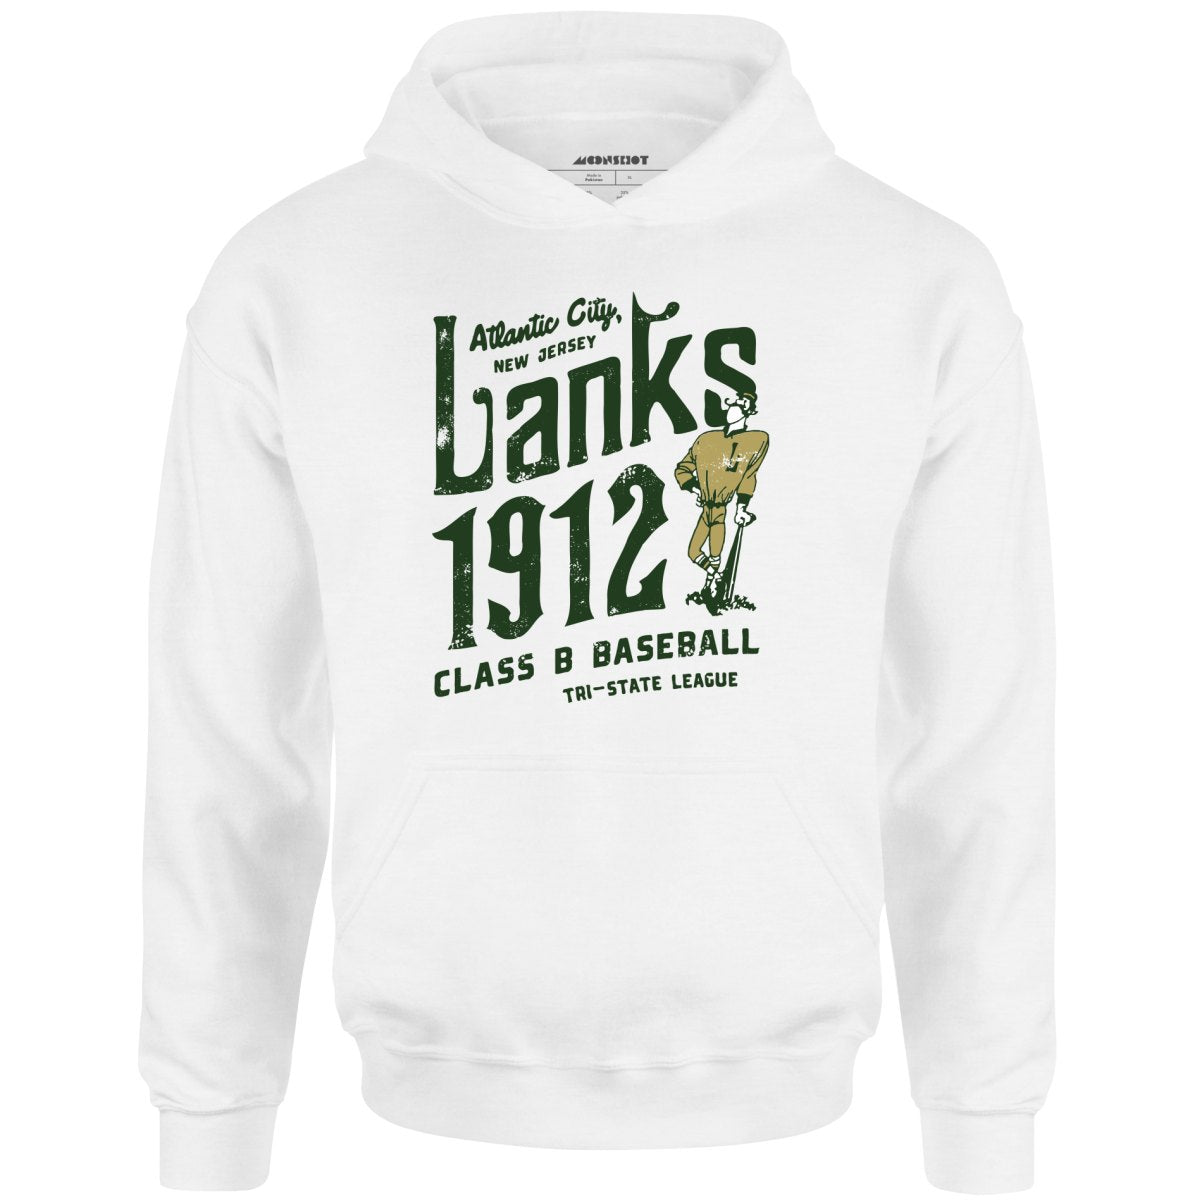 Atlantic City Lanks - New Jersey - Vintage Defunct Baseball Teams - Unisex Hoodie